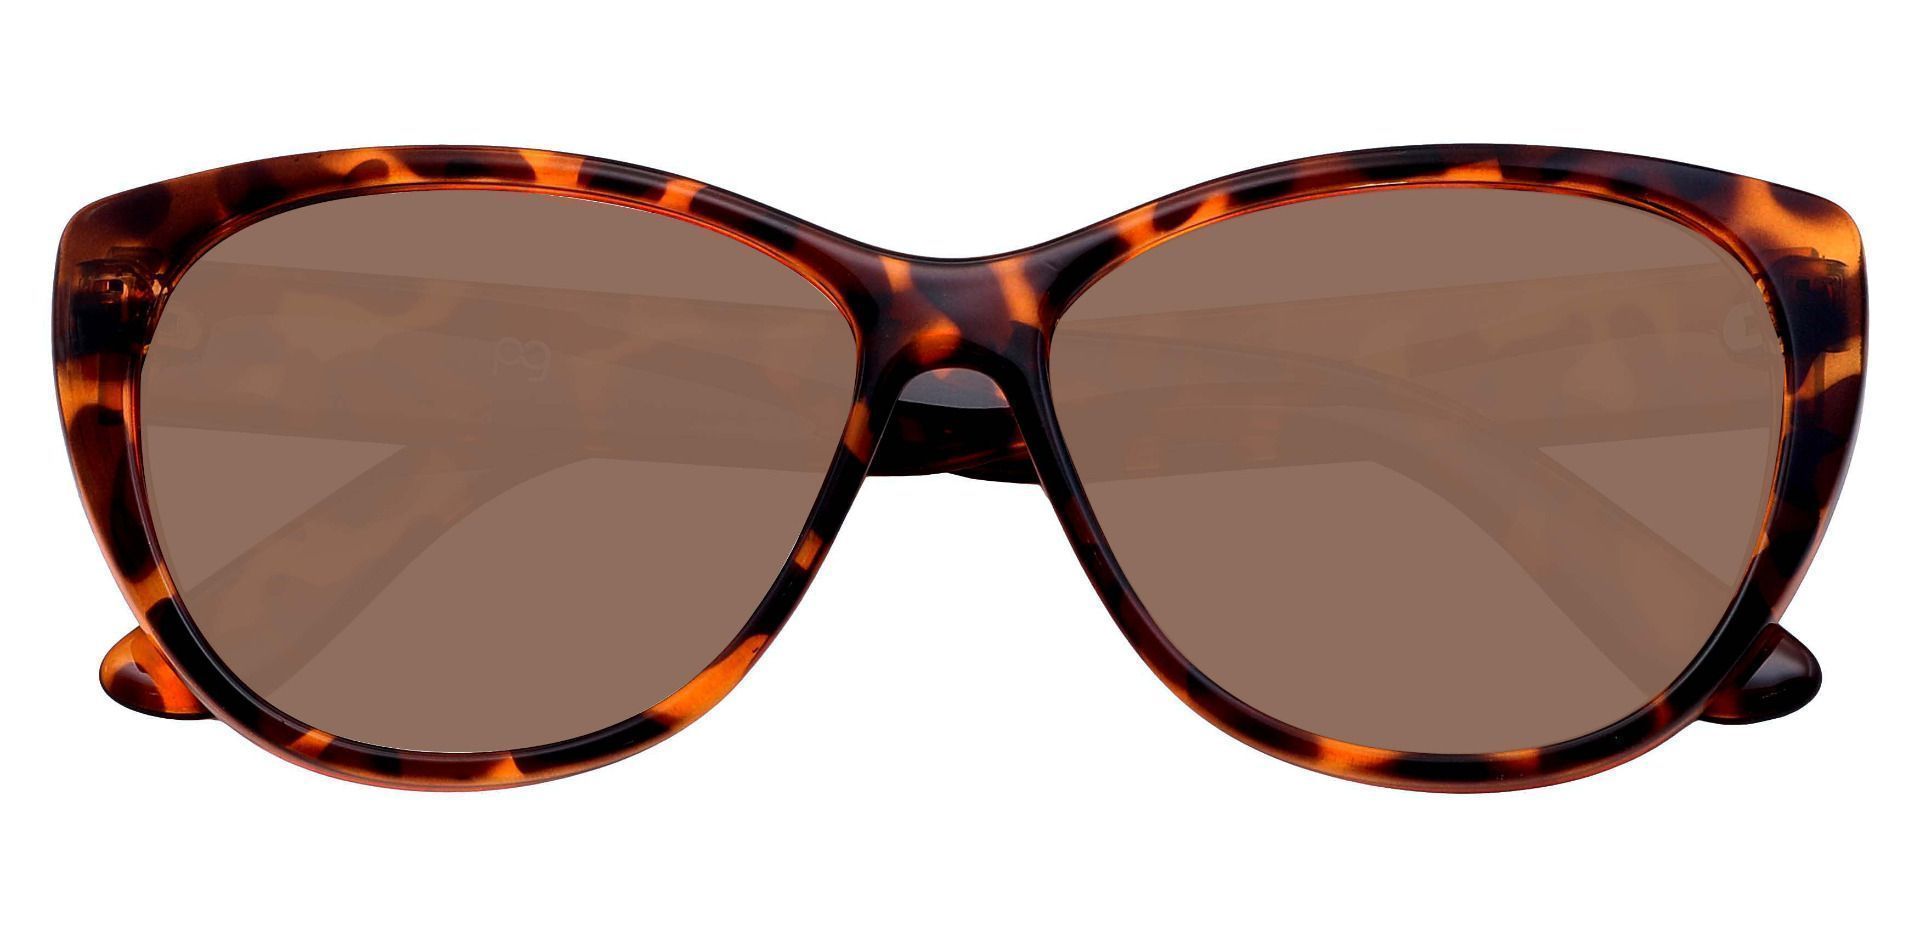 Lynn Cat-Eye Prescription Sunglasses - Tortoise Frame With Brown Lenses